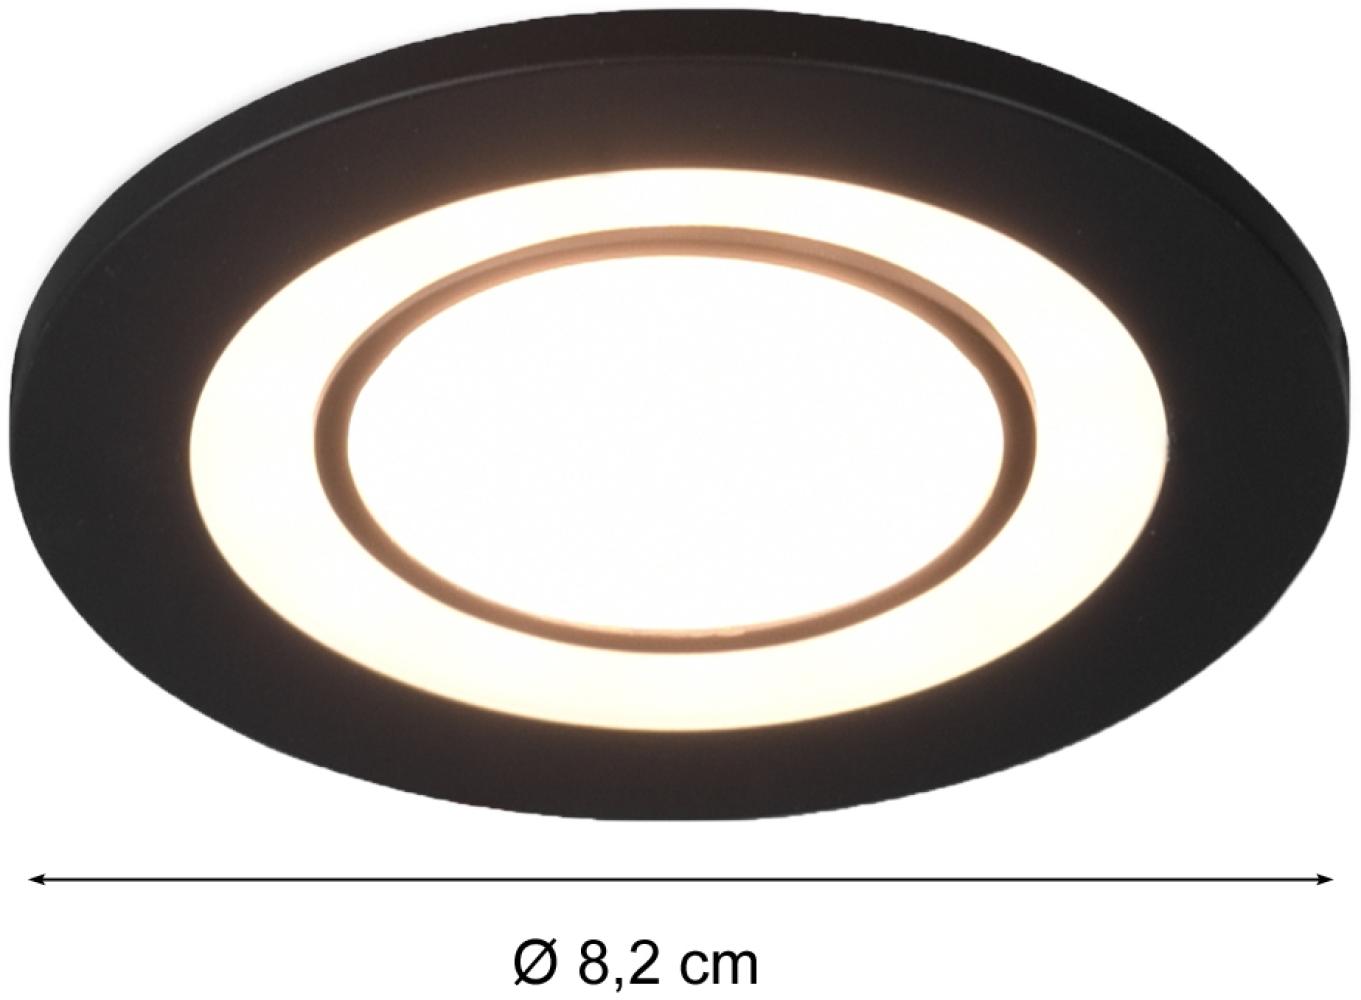 Runder LED Deckeneinbaustrahler 2er Set in Schwarz matt Ø 8,2cm Bild 1